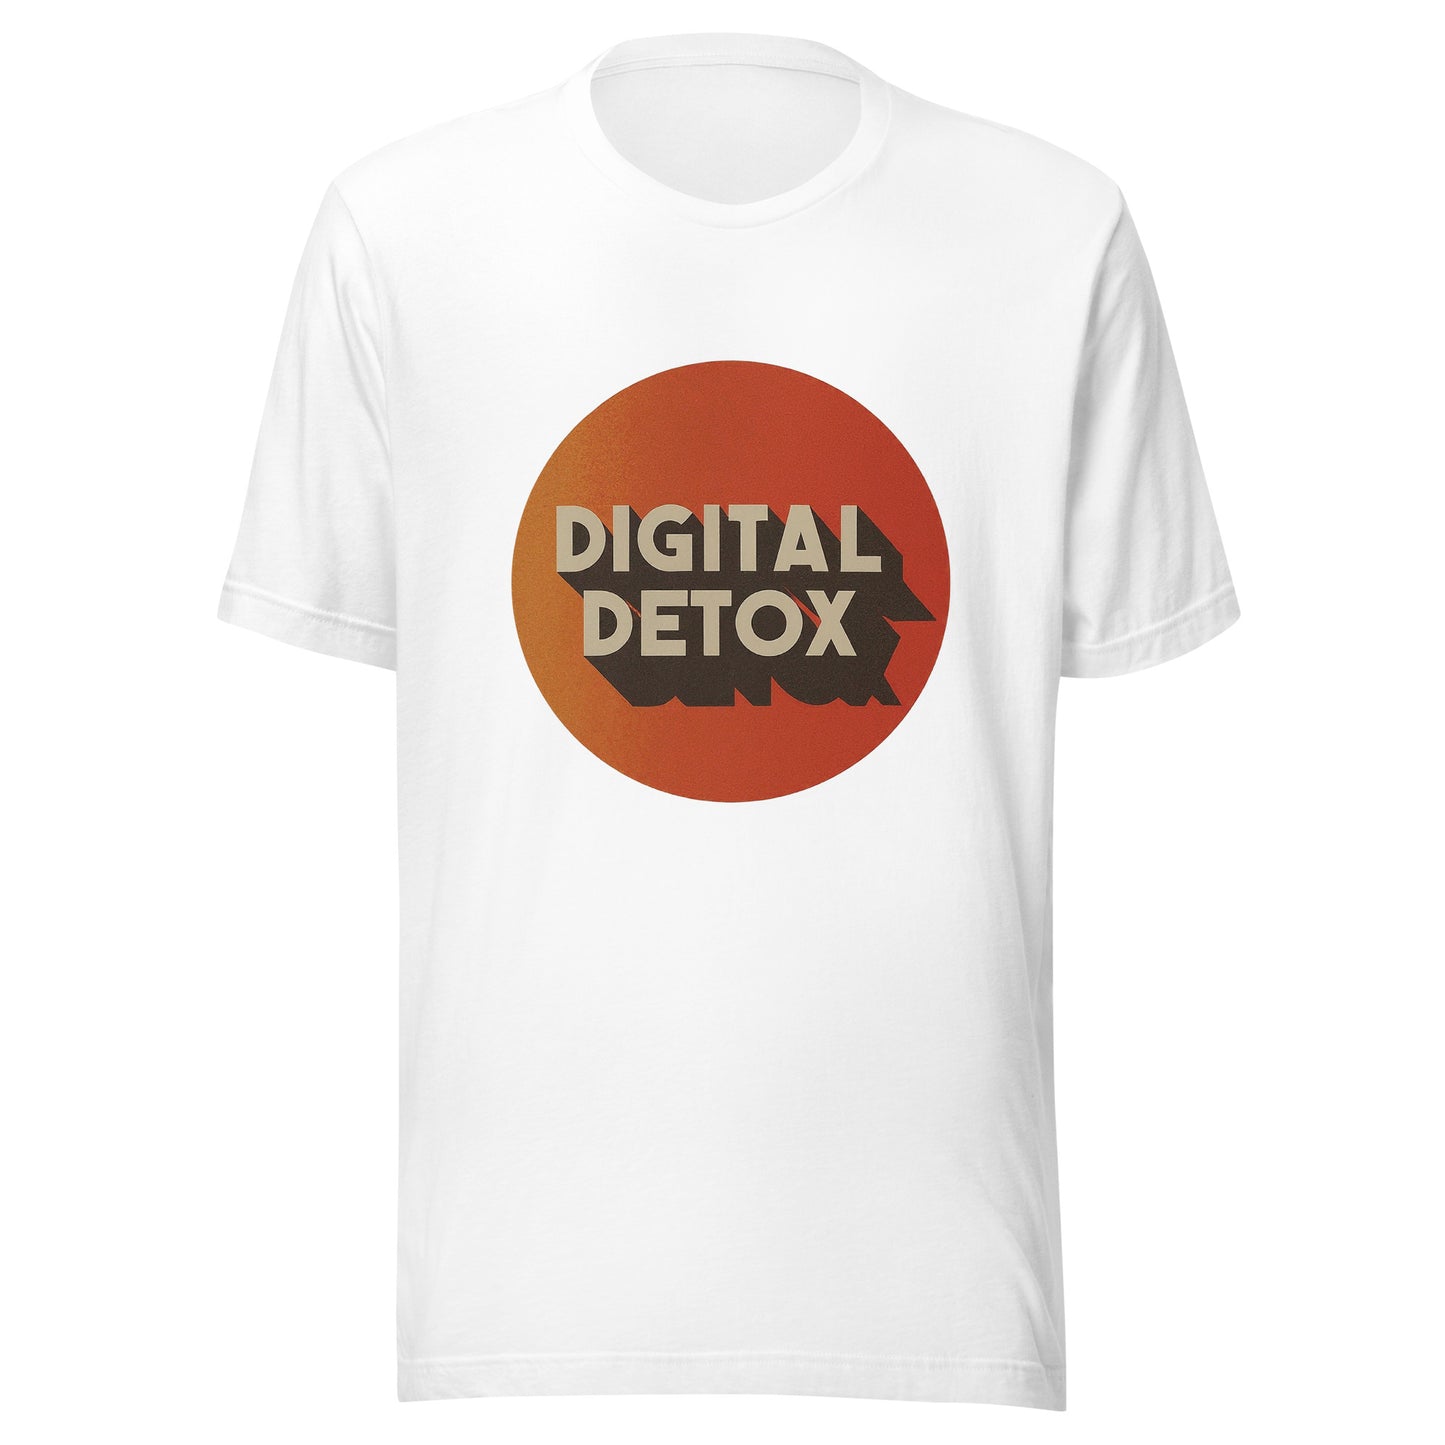 Digital Detox Tee